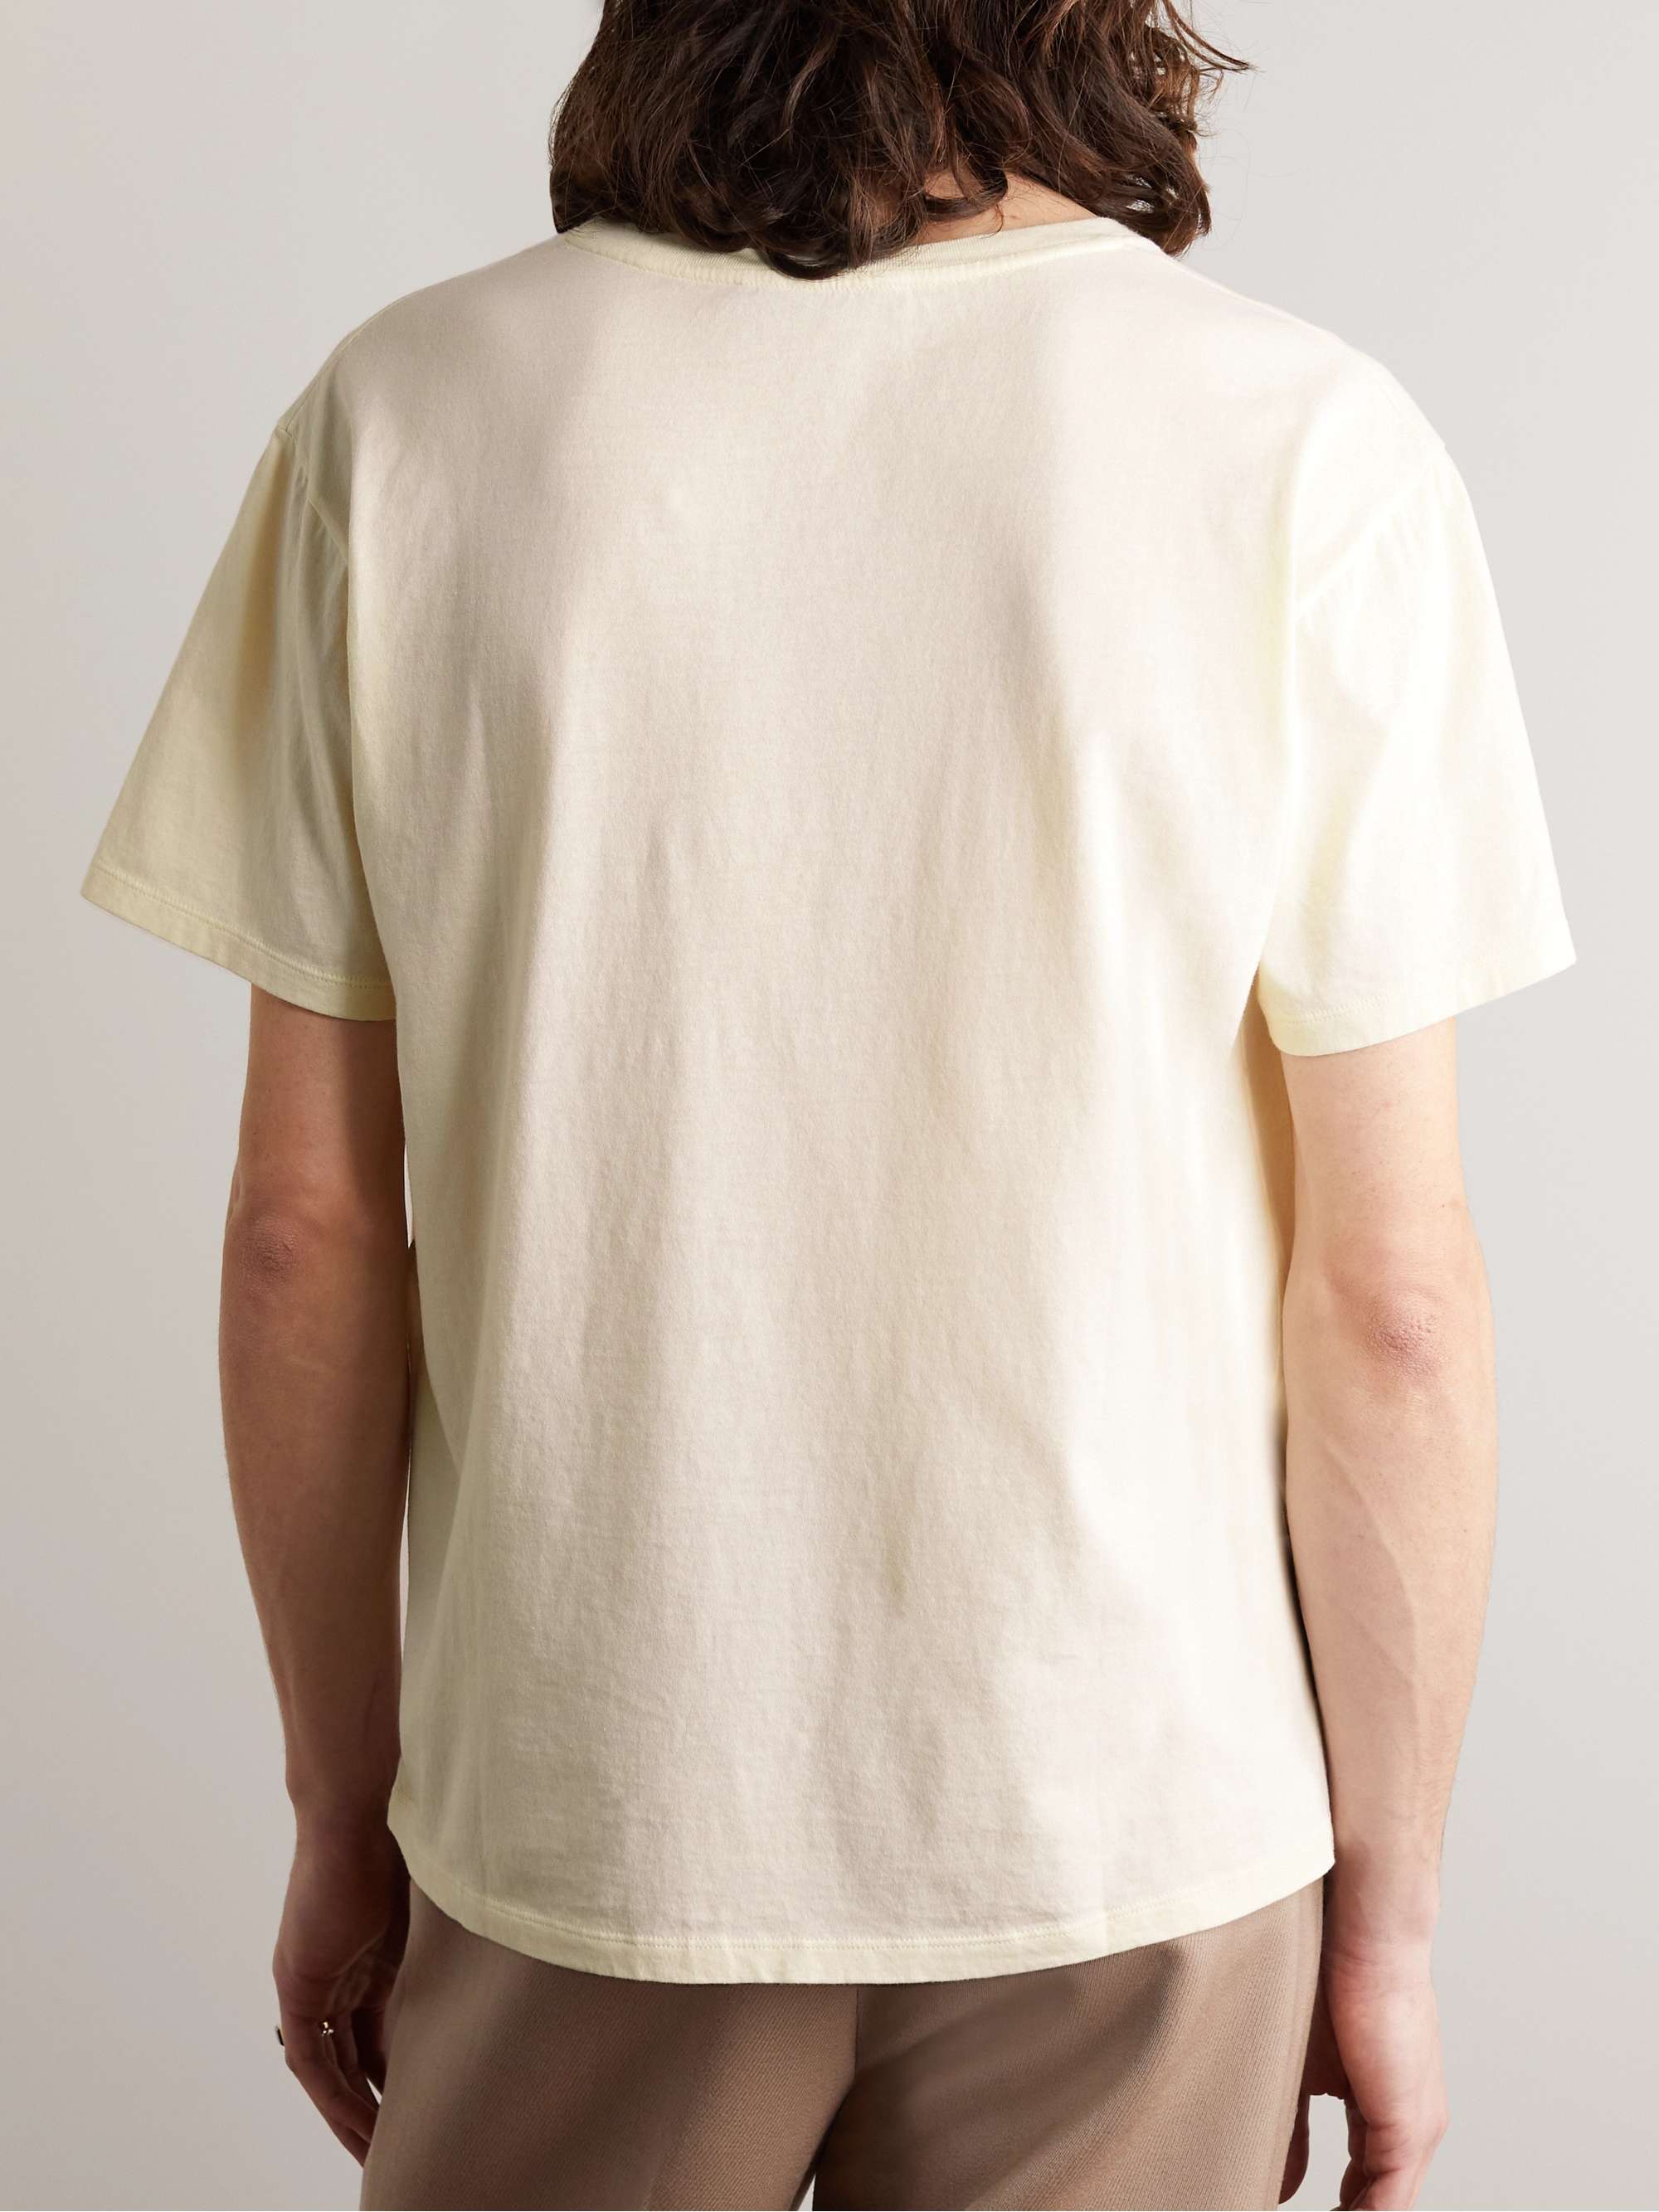 GUCCI Oversized Logo-Print Cotton-Jersey T-Shirt